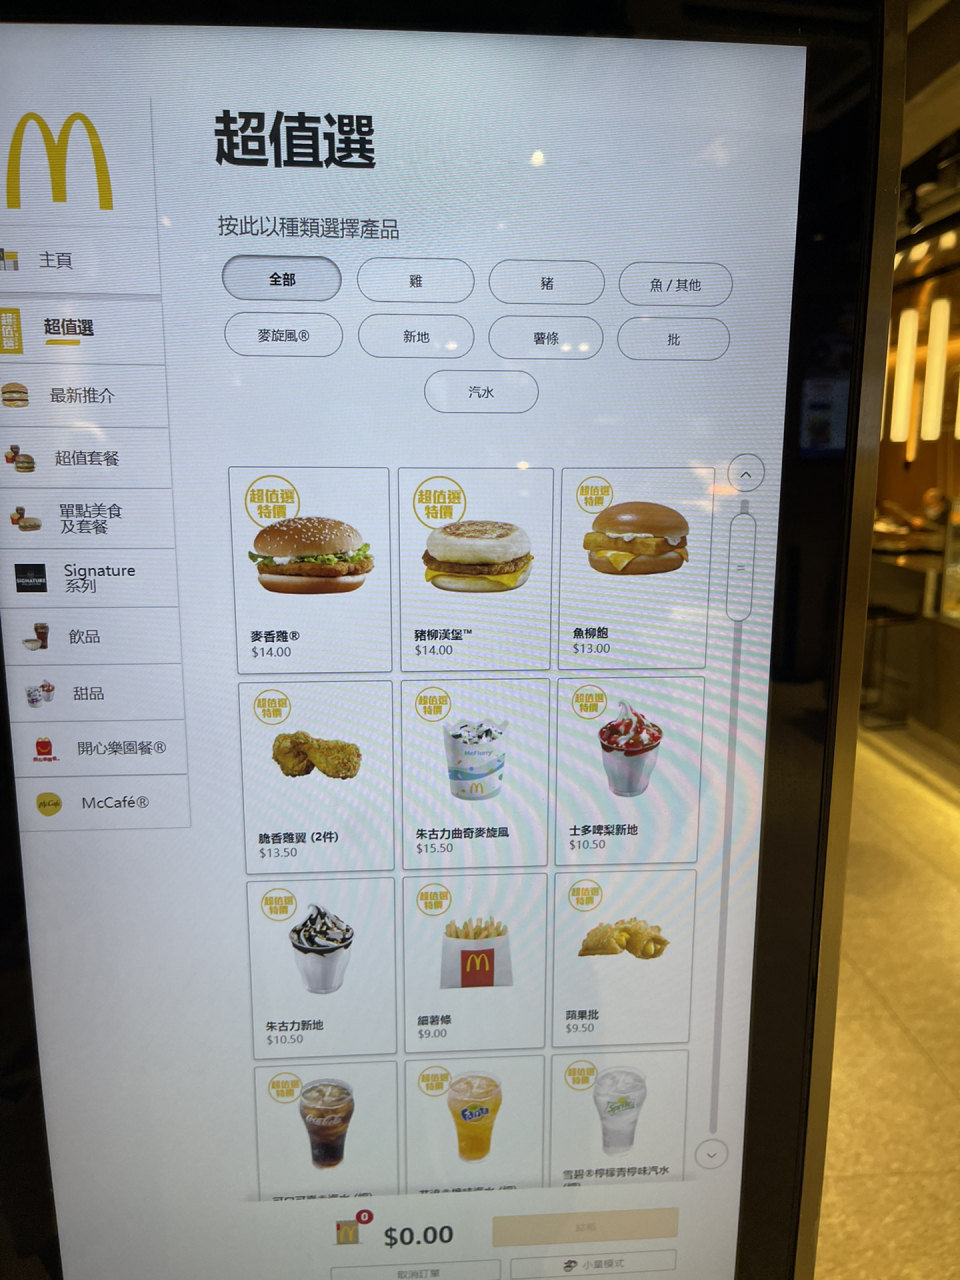 感觉香港的麦当劳价格很亲民 我买了一个汉堡包13块